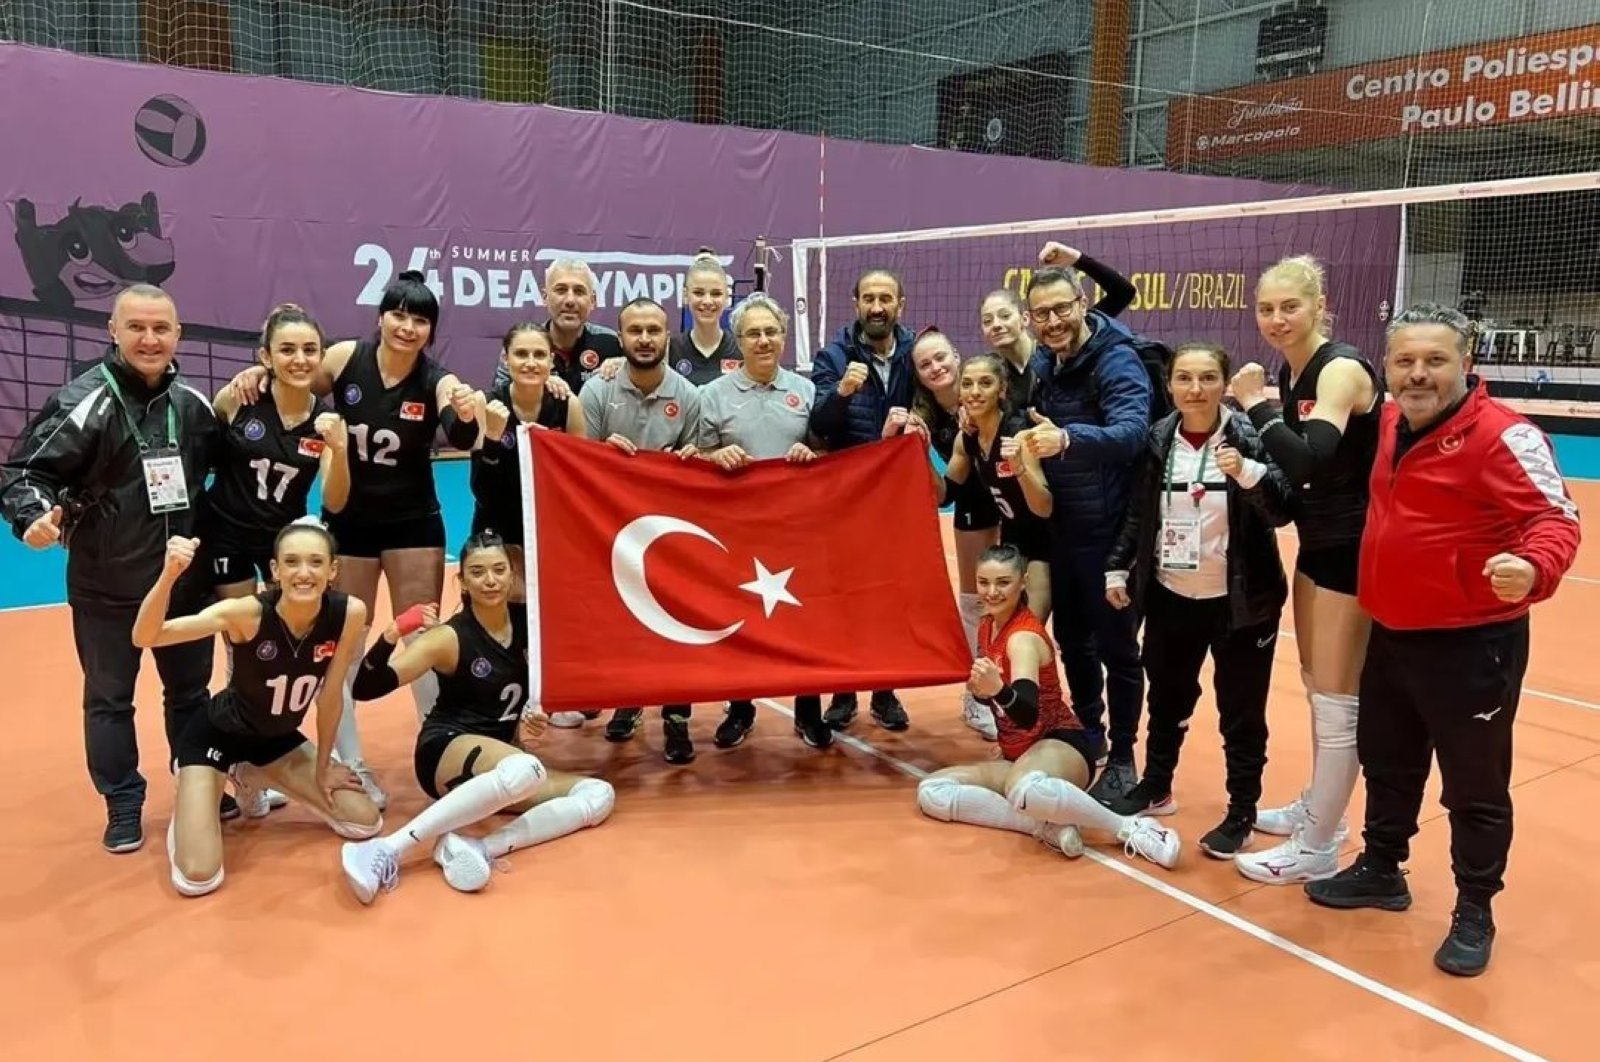 Afyon Türkiye menjadi tuan rumah kejuaraan bola voli tuli nasional